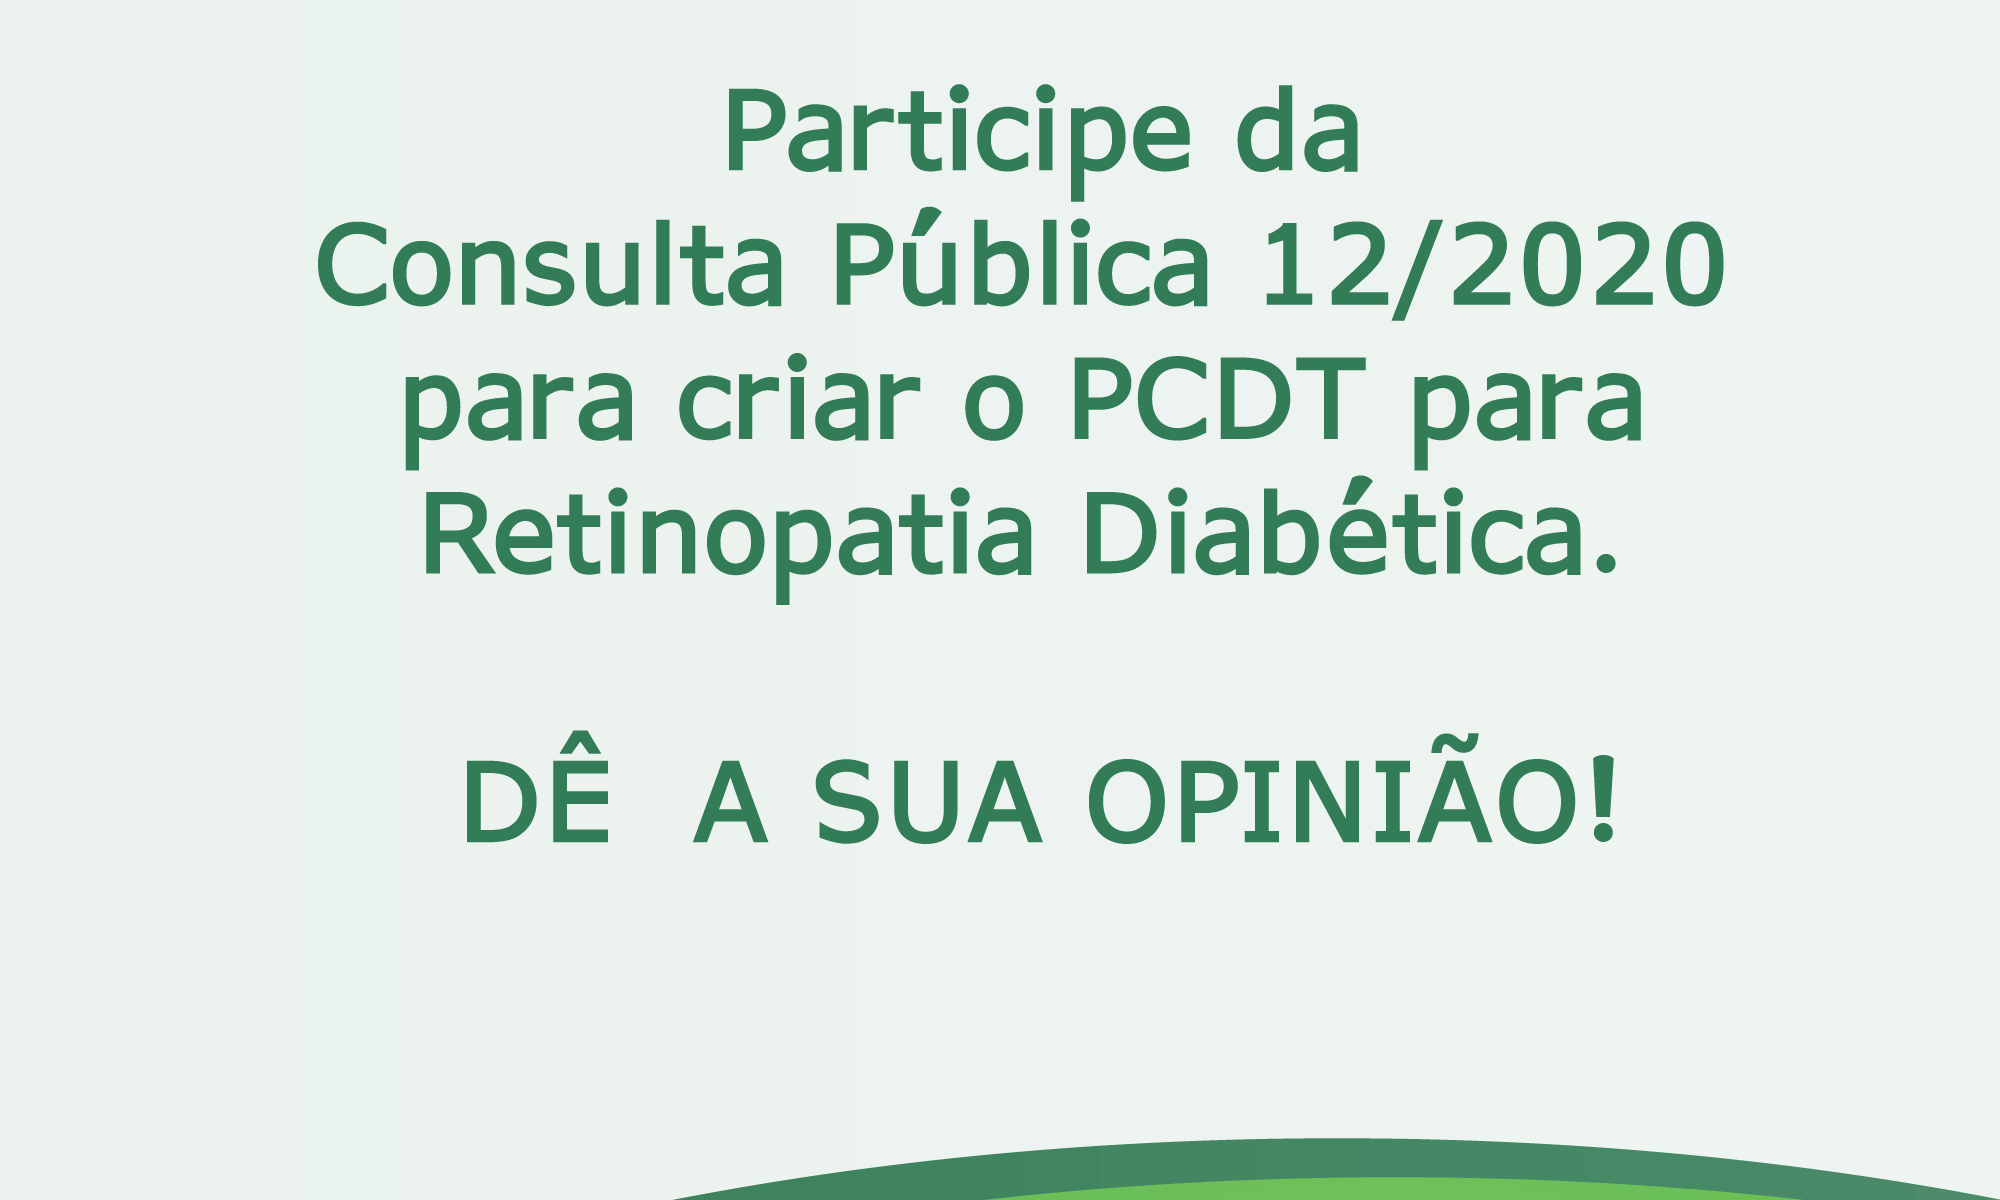 #PraCegoVer imagem ilustrativa. Está escrito: "Você tem até amanhã! Participe da Consulta Pública 12/2020 para criar o PCDT para Retinopatia Diabética. DÊ A SUA OPINIÃO!"